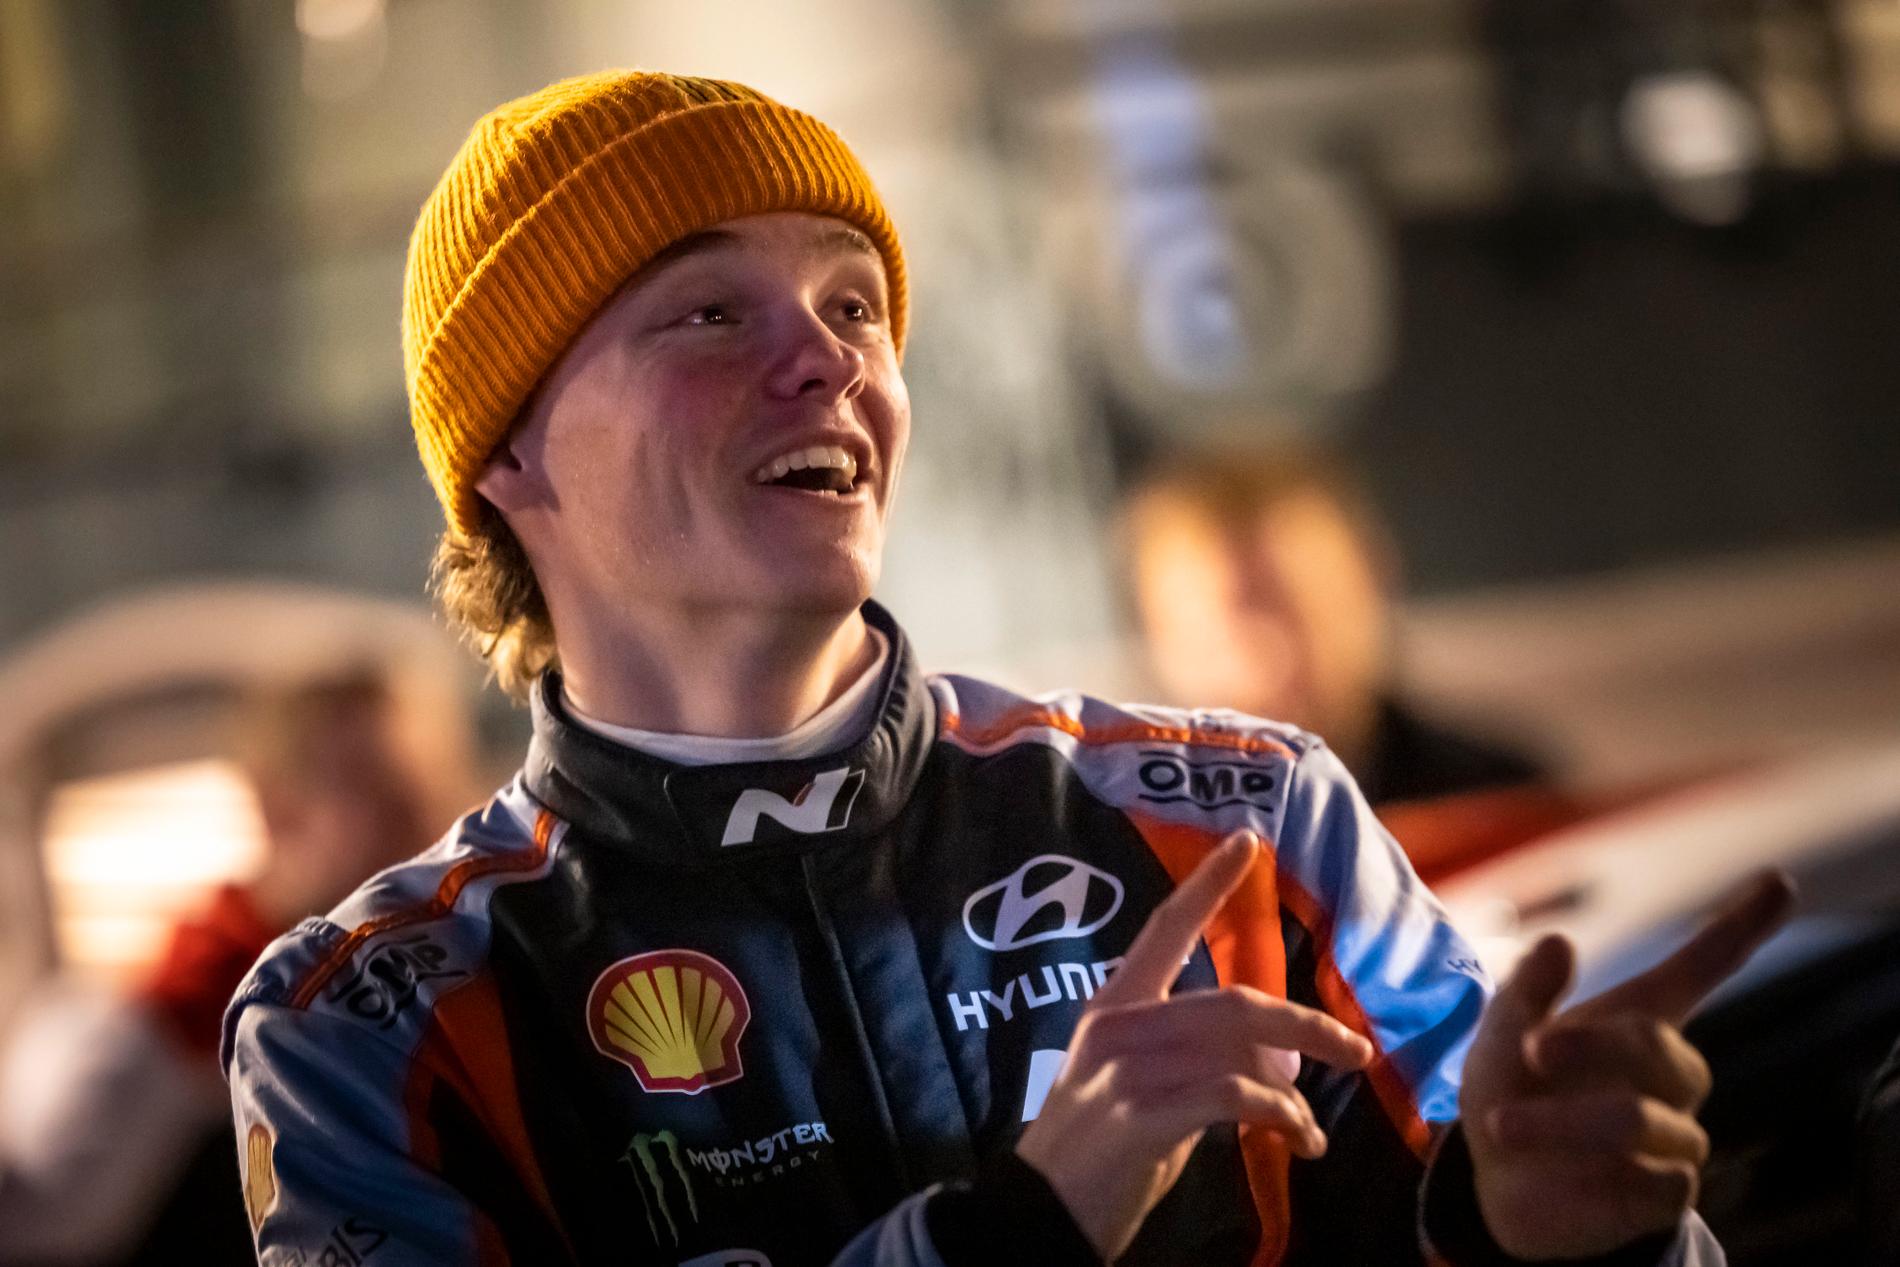 För ett år sedan tävlade han för Hyundai i WRC, nu har Oliver tagit ett kliv tillbaka till WRC2 för att kunna ta sig tillbaka till toppen.